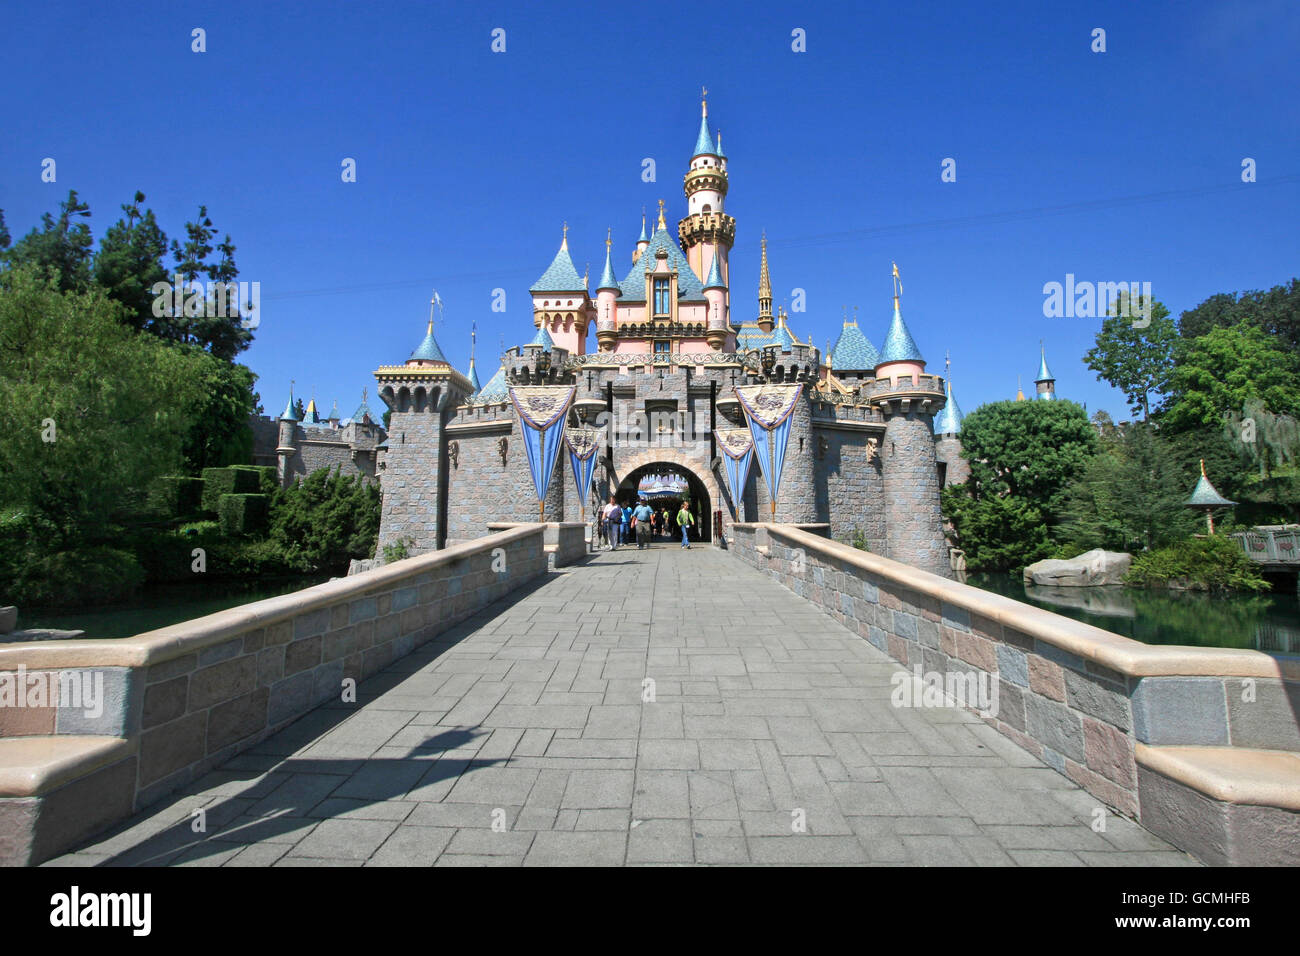 Anaheim, Kalifornien, USA. 16. September 2009. Das Disneyland Kalifornien Sleeping Beauty Castle. Lucy Clark/Alamy Live-Nachrichten Stockfoto